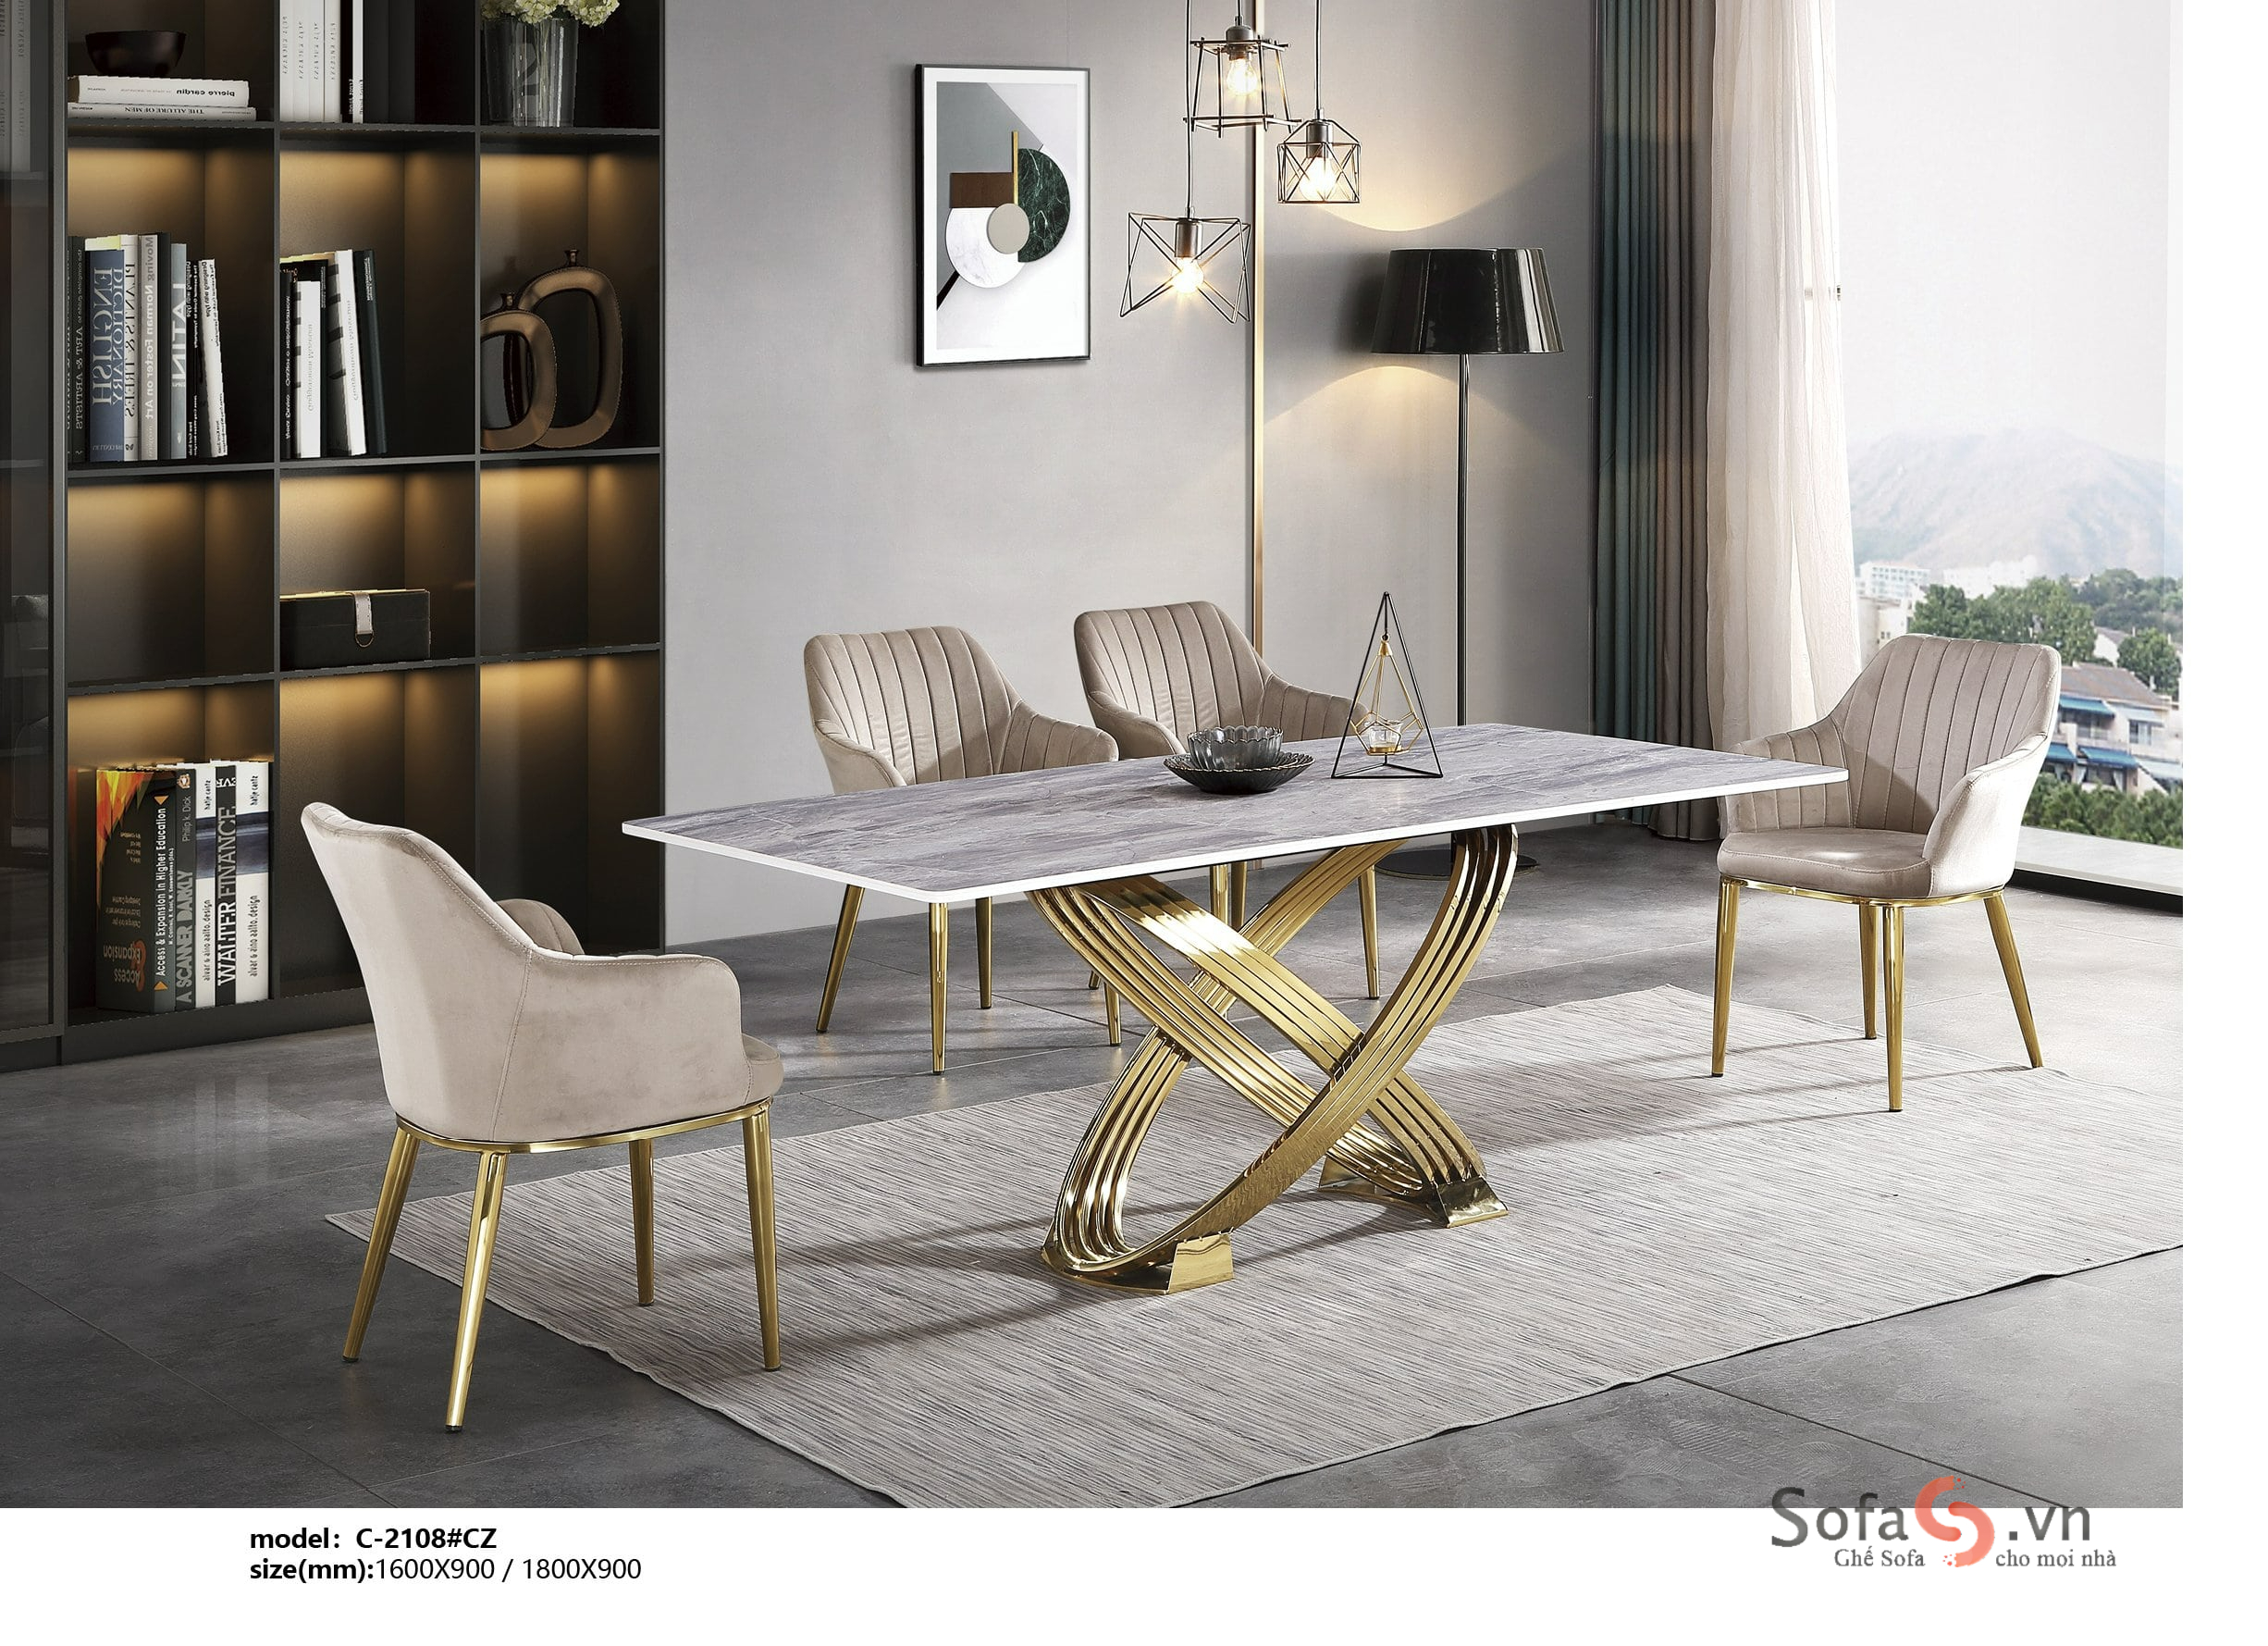 Nét sang trọng và đẳng cấp của bộ bàn ăn Luxury không chỉ giúp bạn mang lại cho không gian ẩm thực một vẻ đẹp độc đáo, mà còn giúp tạo nên một không gian sống đầy phong cách và ấn tượng. Bạn chắc chắn sẽ yêu thích bộ bàn ghế ấy ngay từ cái nhìn đầu tiên.